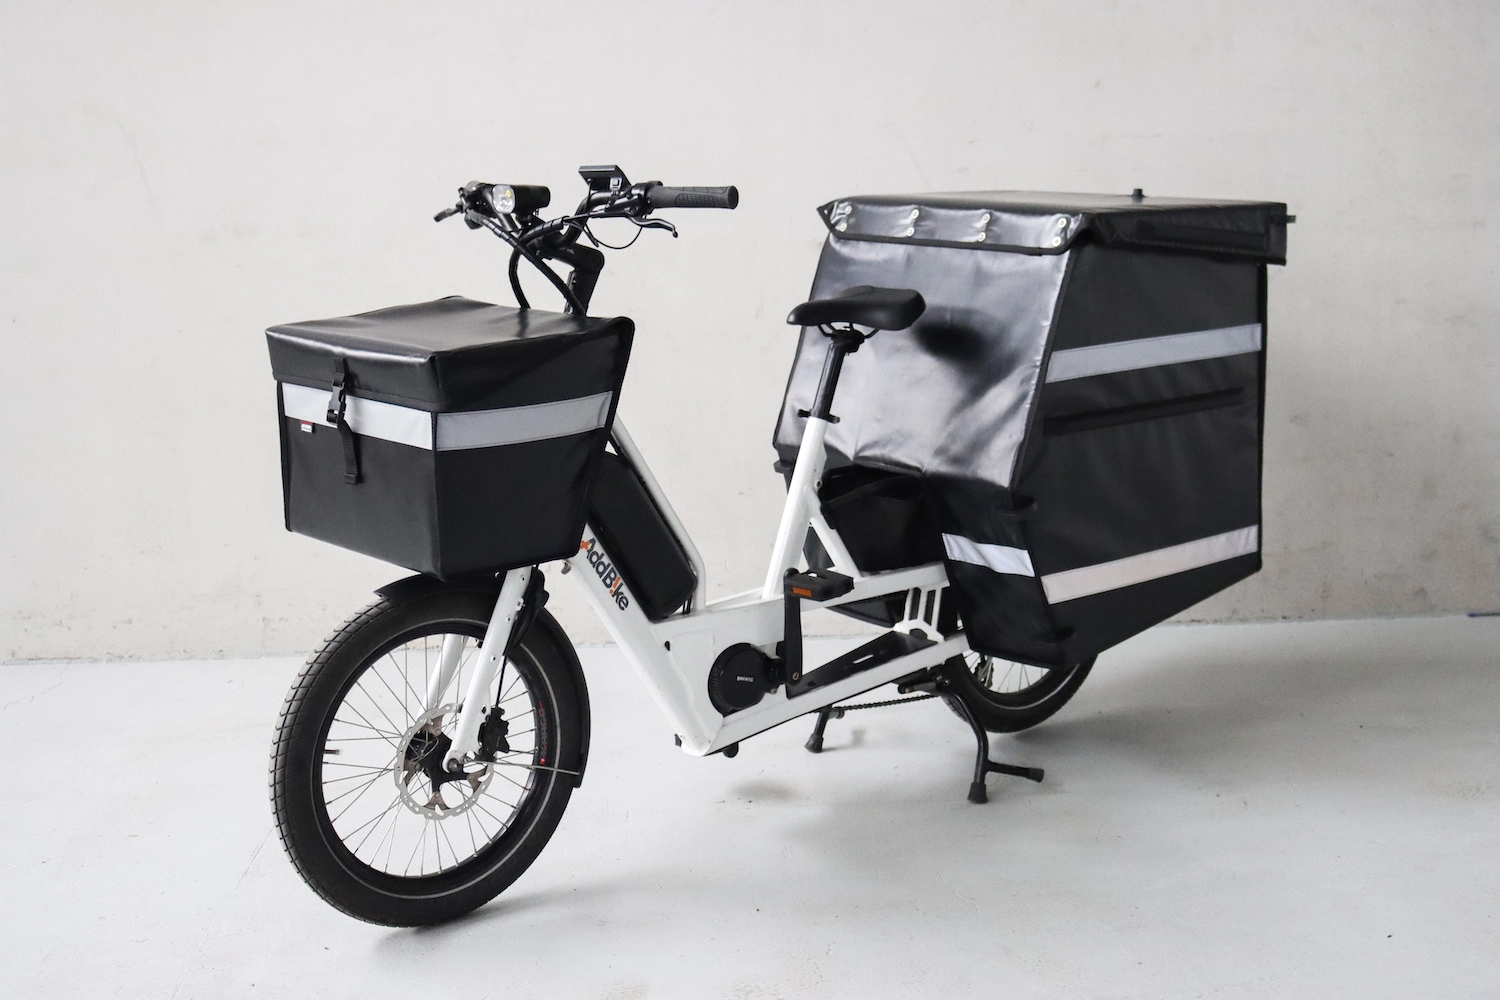 UK cargo bikes for professional use